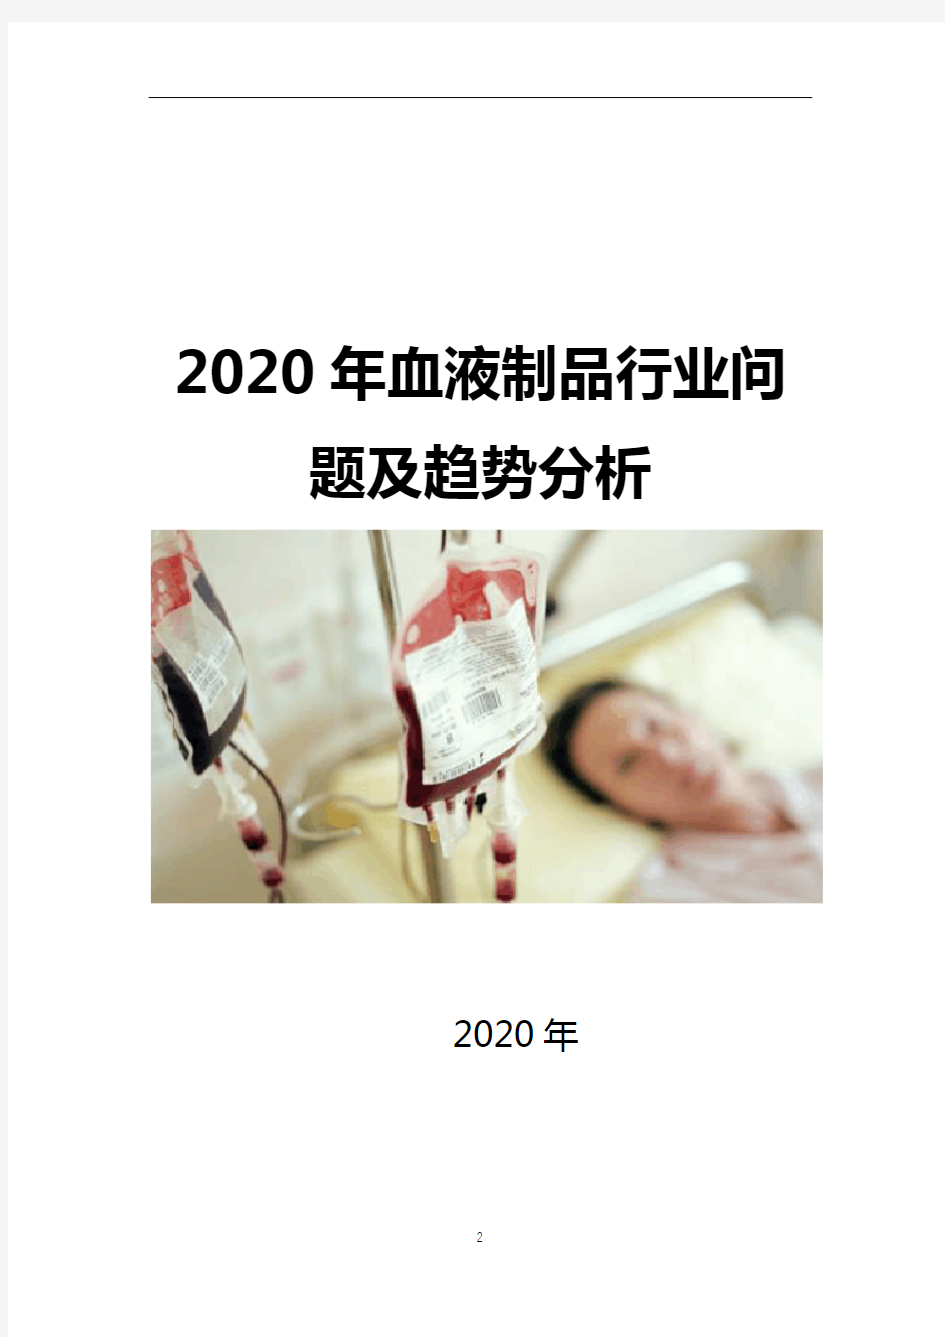 2020年血液制品行业问题及趋势分析